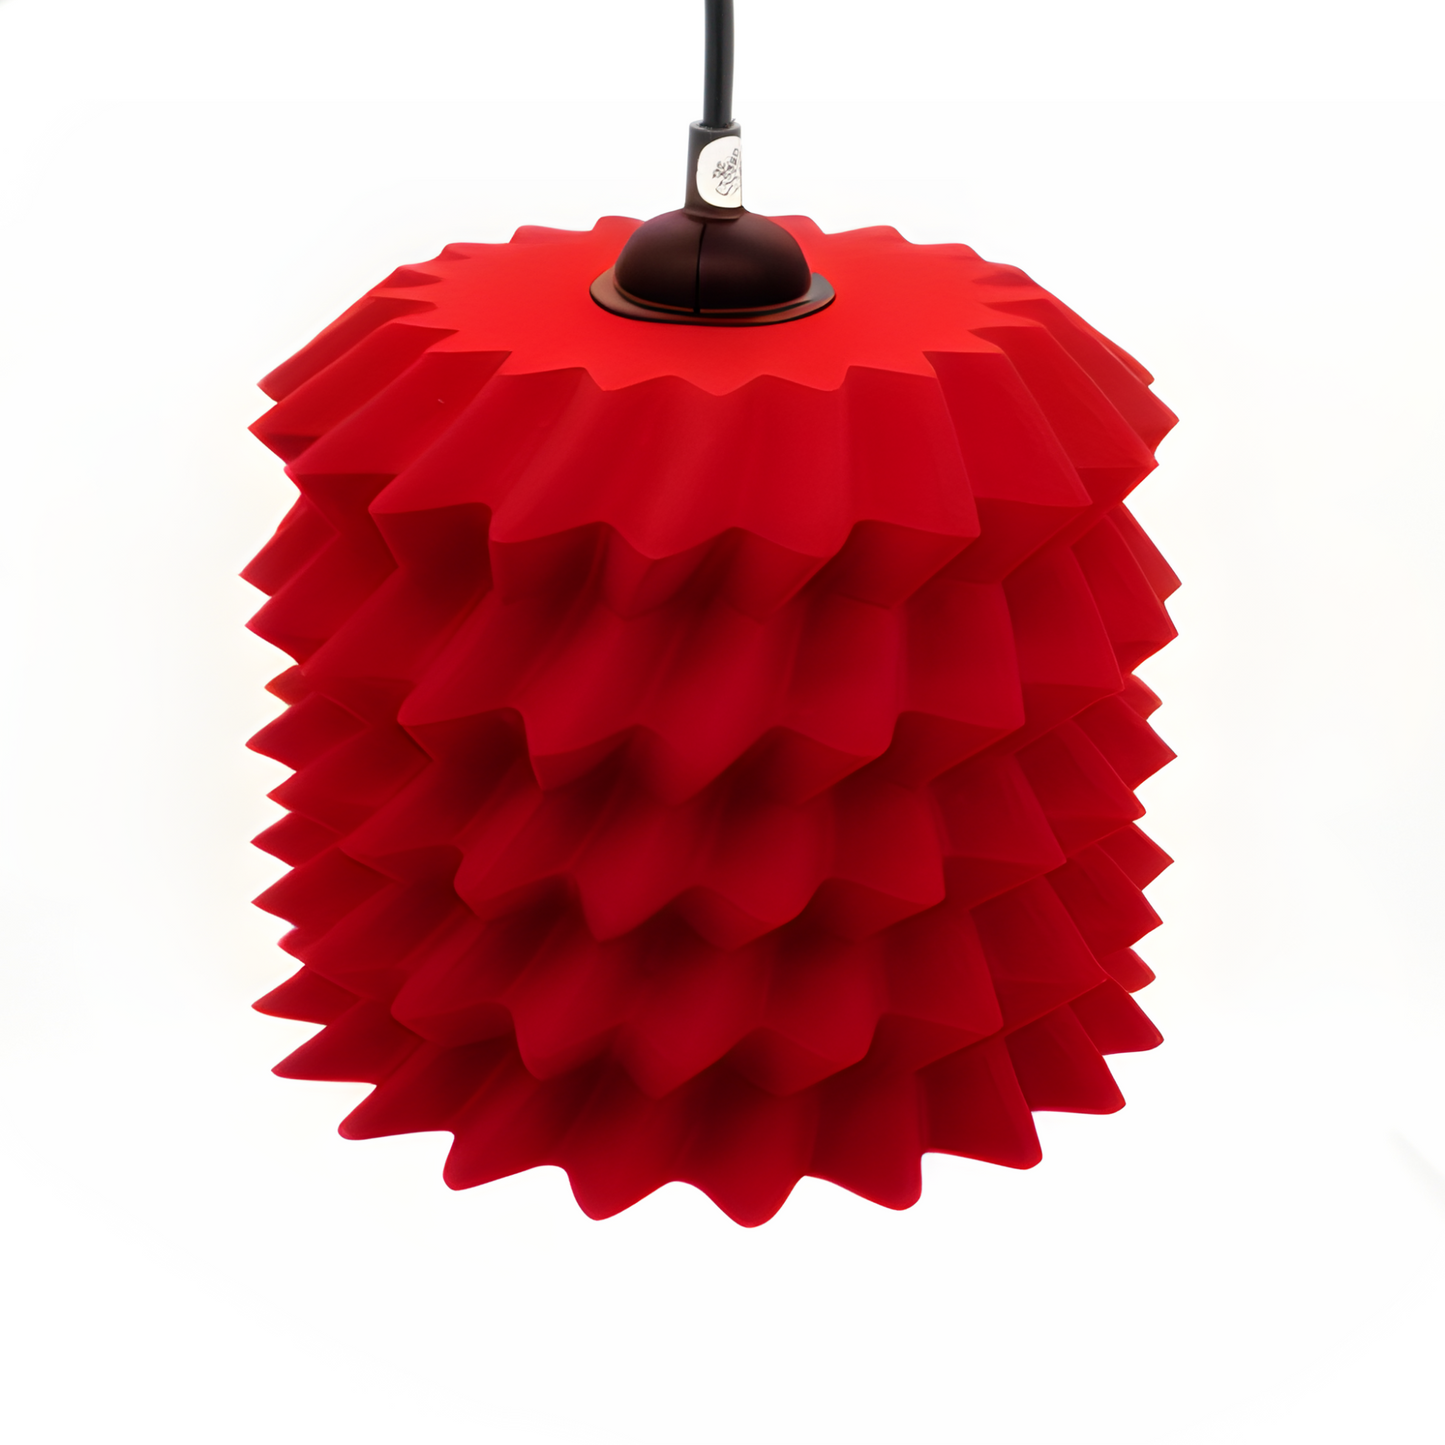 Amandola design pendant lamp red edition